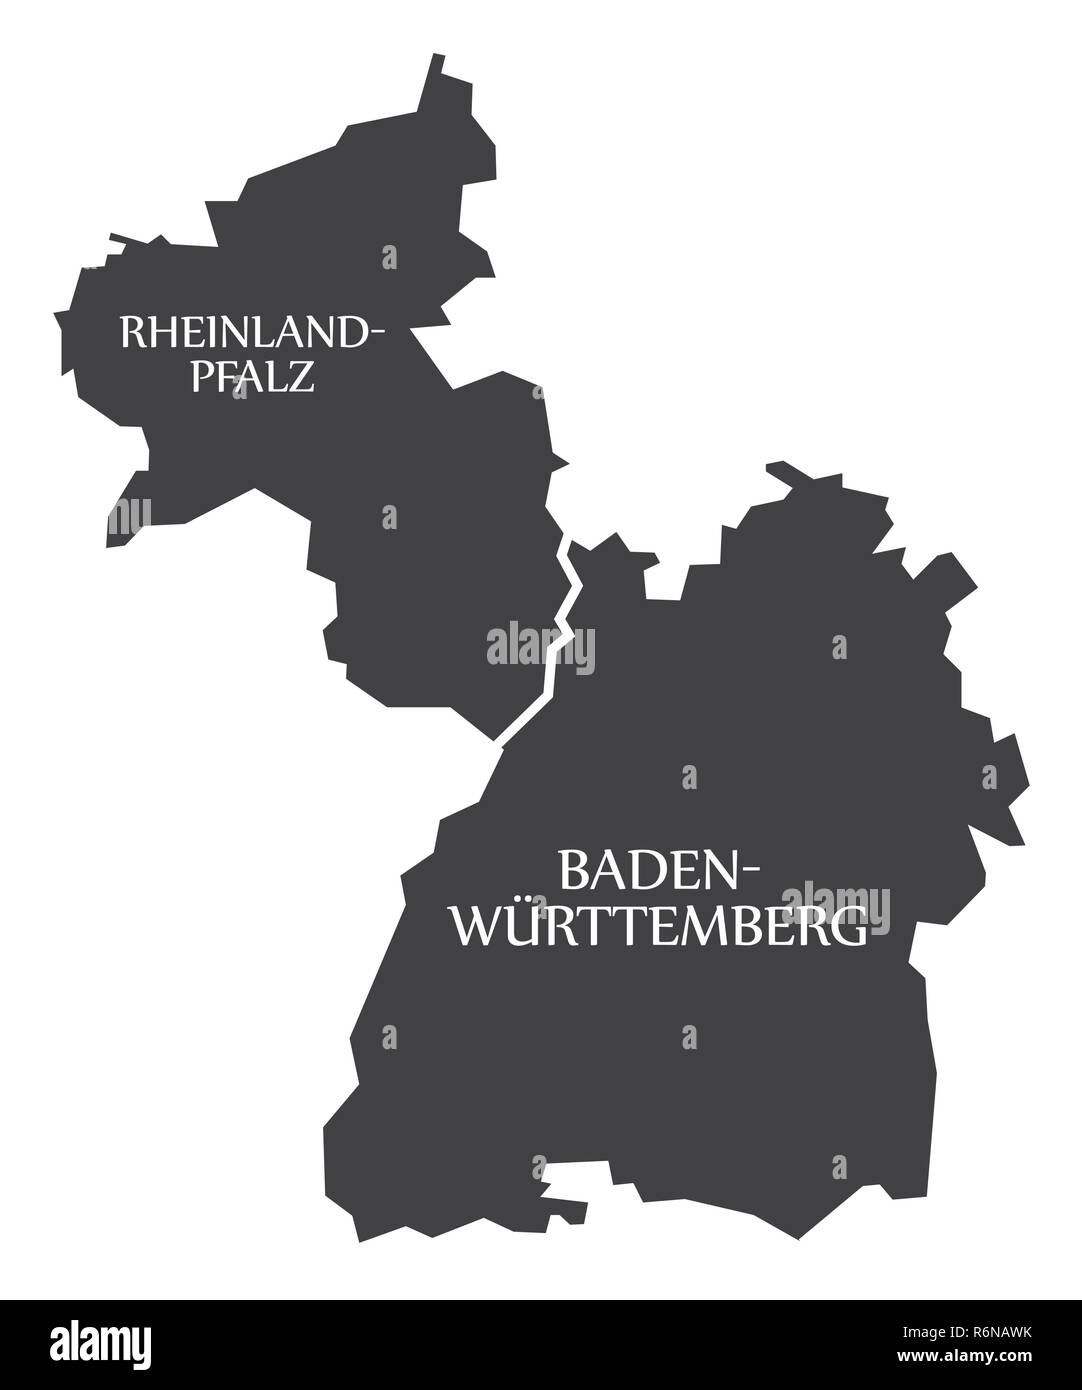 Rheinland-pfalz - Baden Wuerttemberg états fédéraux carte de l'Allemagne avec des titres noir Illustration de Vecteur